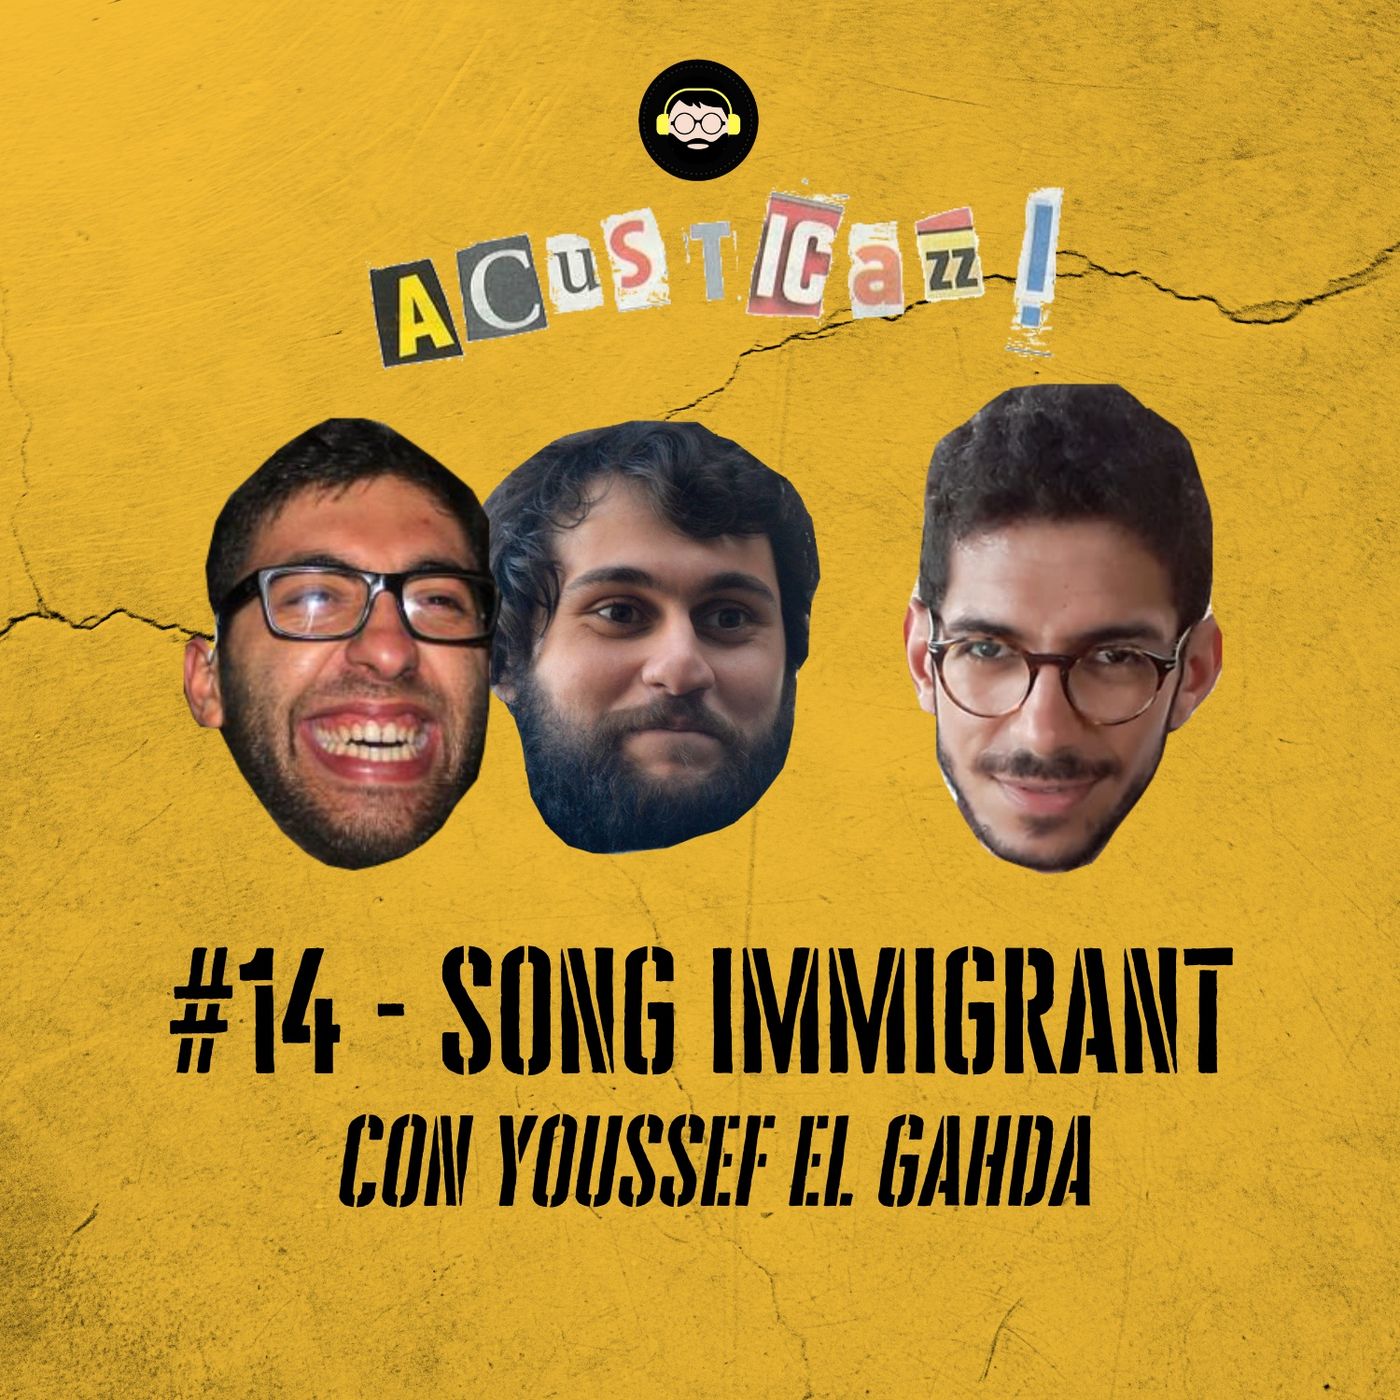 Song Immigrant - con Youssef El Gahda | #14